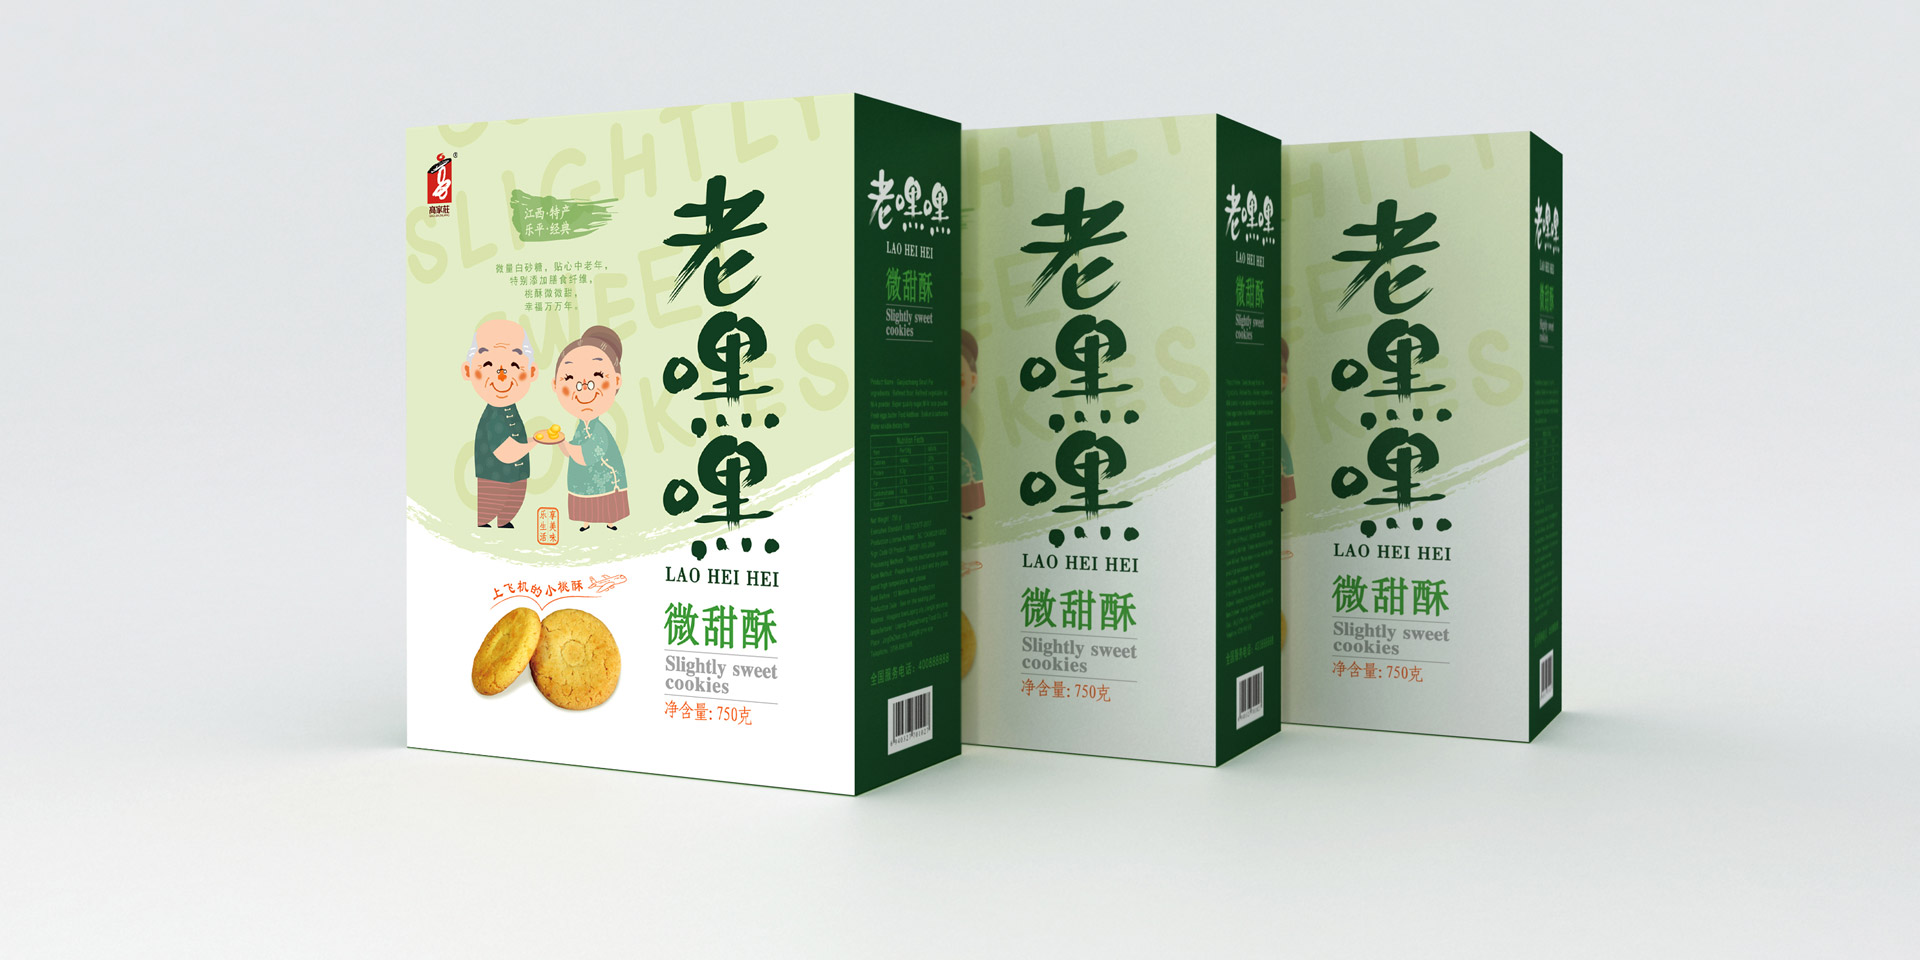 食品包装营销策划设计,包装设计,食品包装设计,上海包装设计公司,上海食品包装设计公司,产品包装设计公司